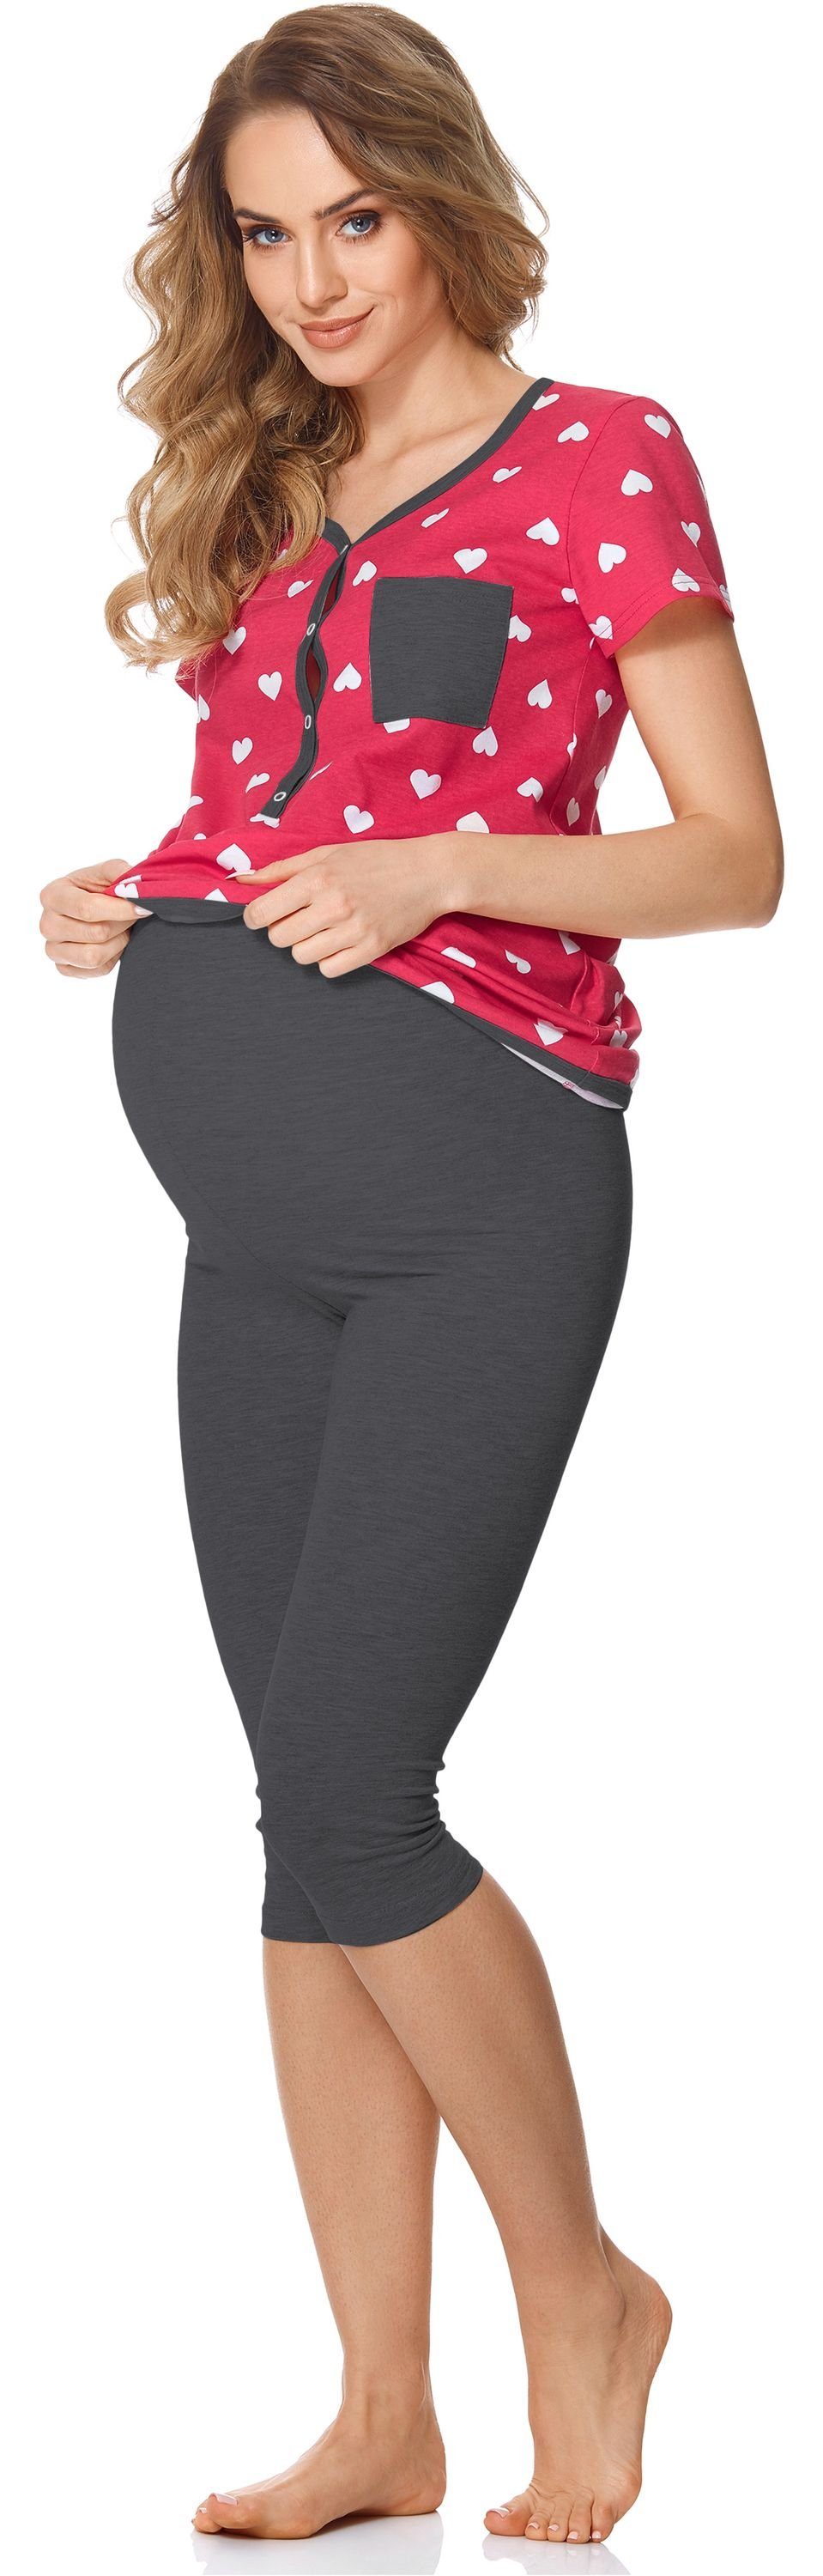 Bellivalini Umstandspyjama Brusttasche Damen mit Umstands mit Herzen/Graphite Rosa Stillfunktion BLV50-126 Pyjama